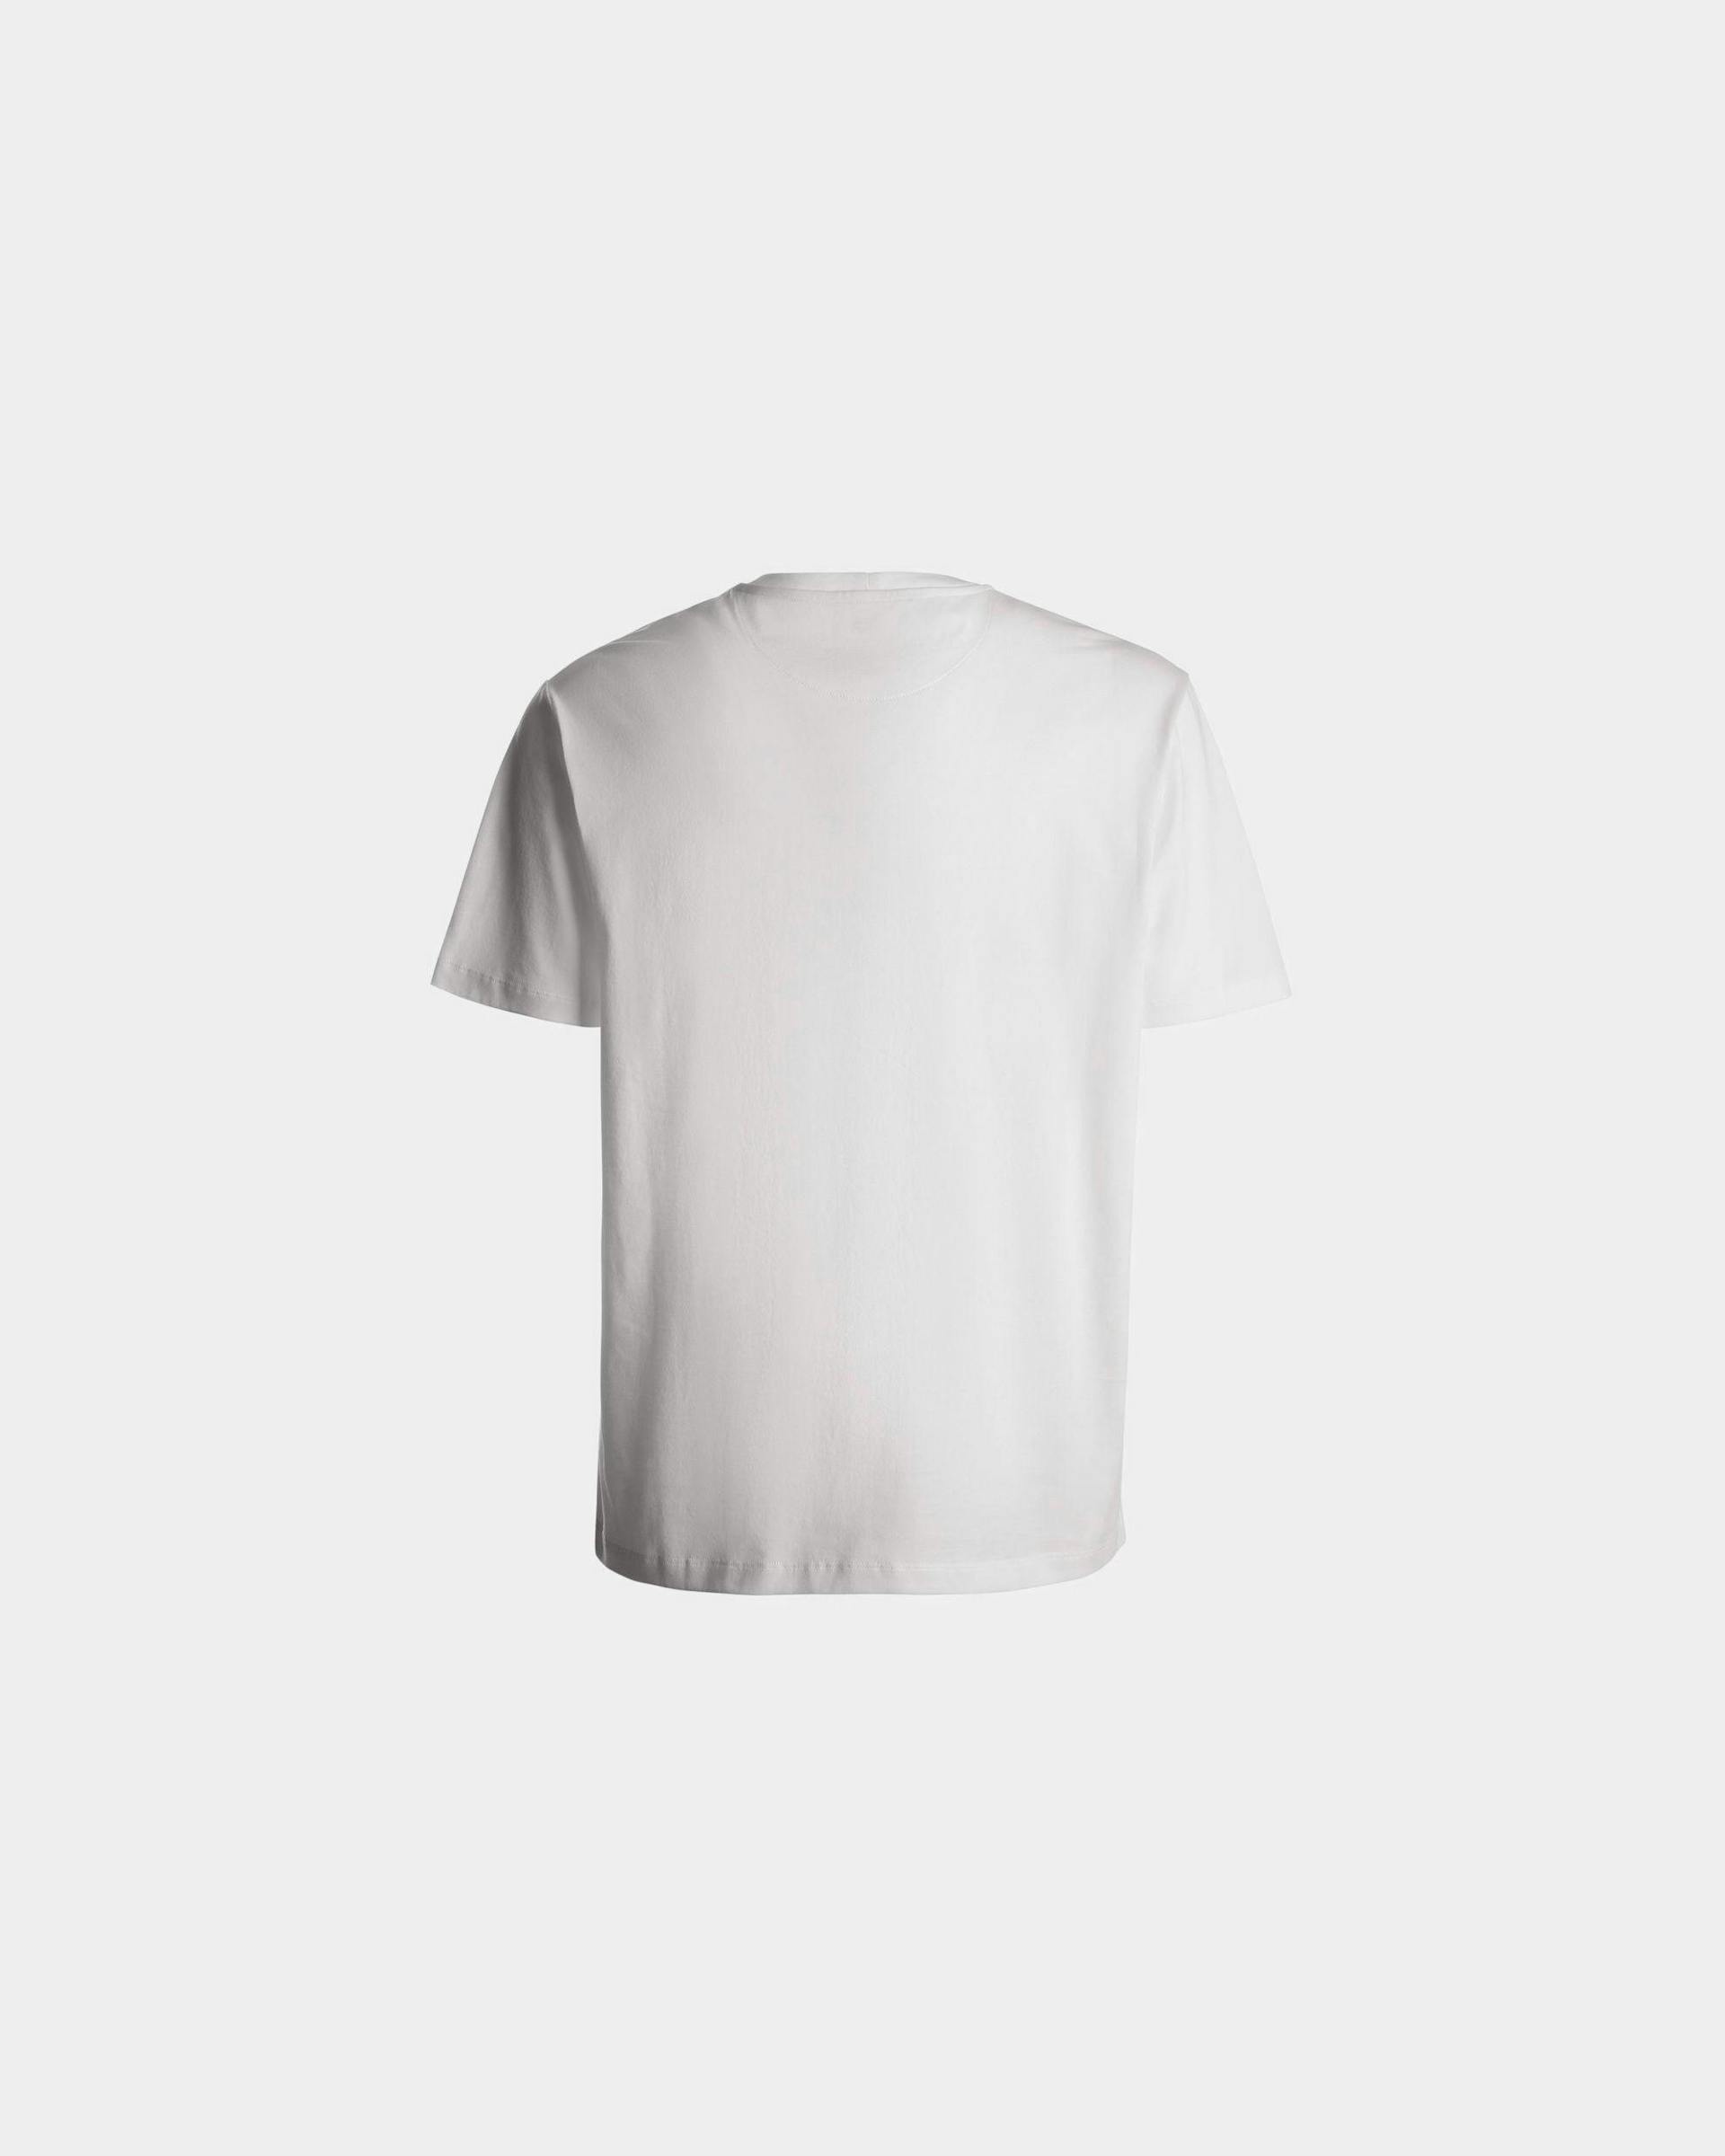 Men's T-Shirt In White Cotton | Bally | Still Life Back